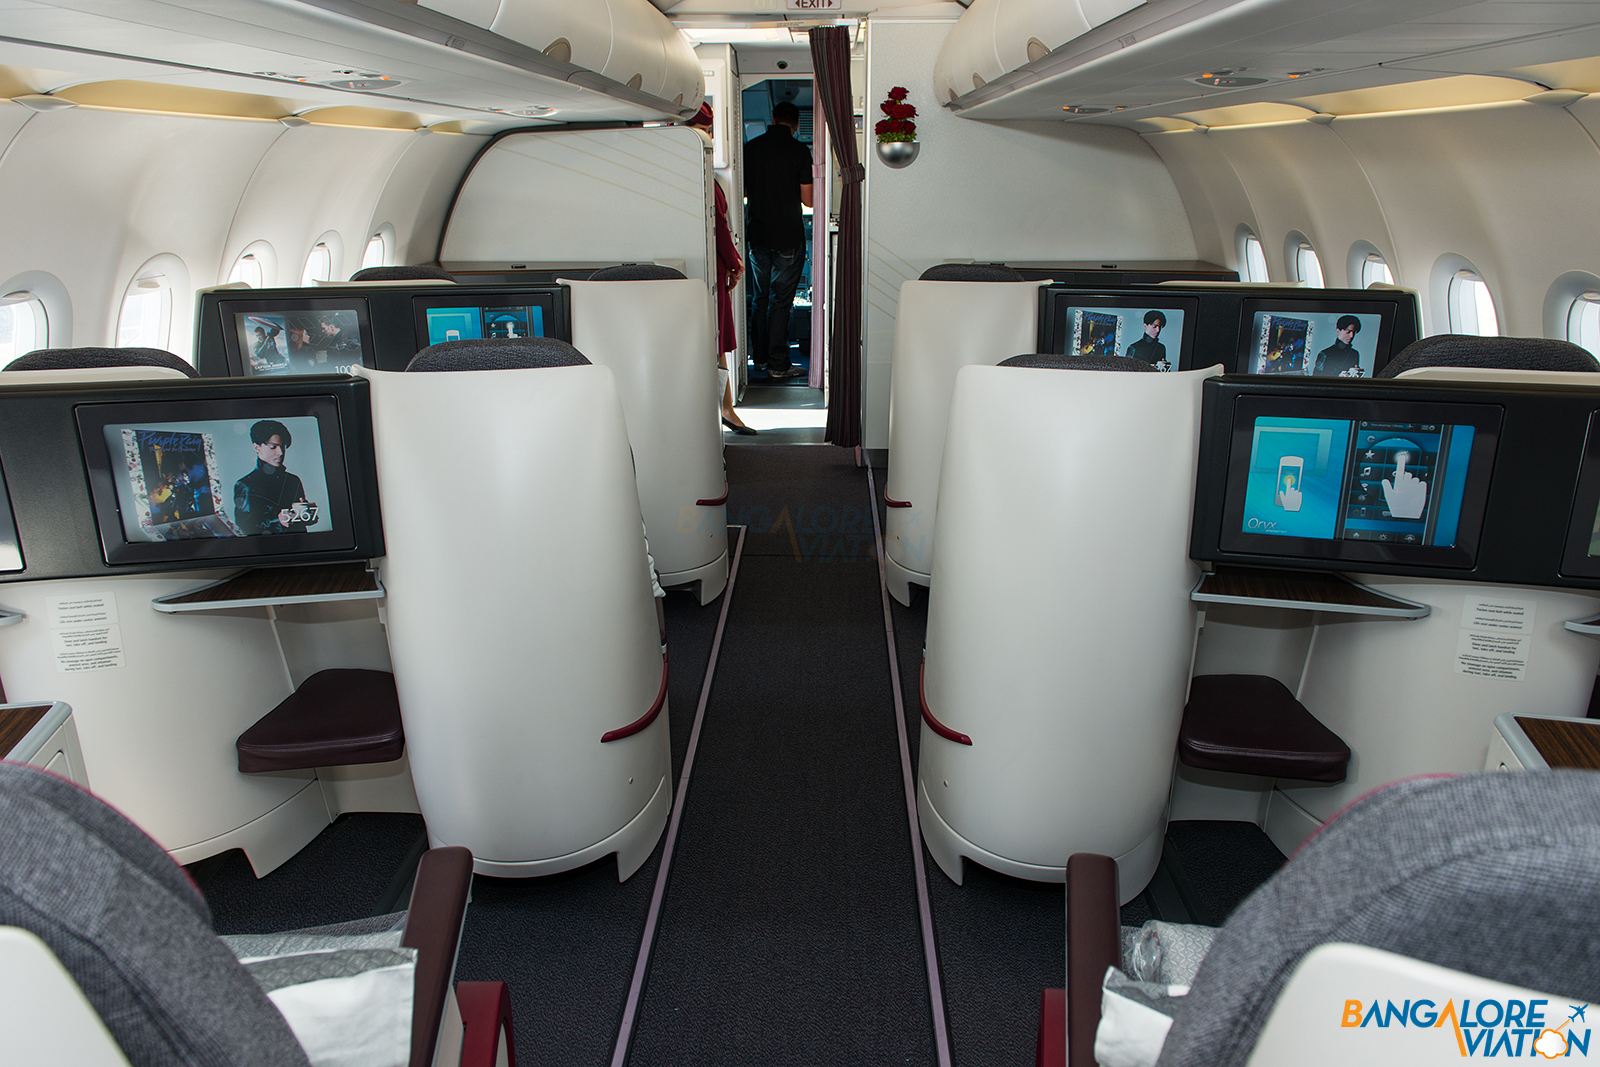 Through the lens: Onboard Qatar Airways' Airbus A320 - Bangalore Aviation